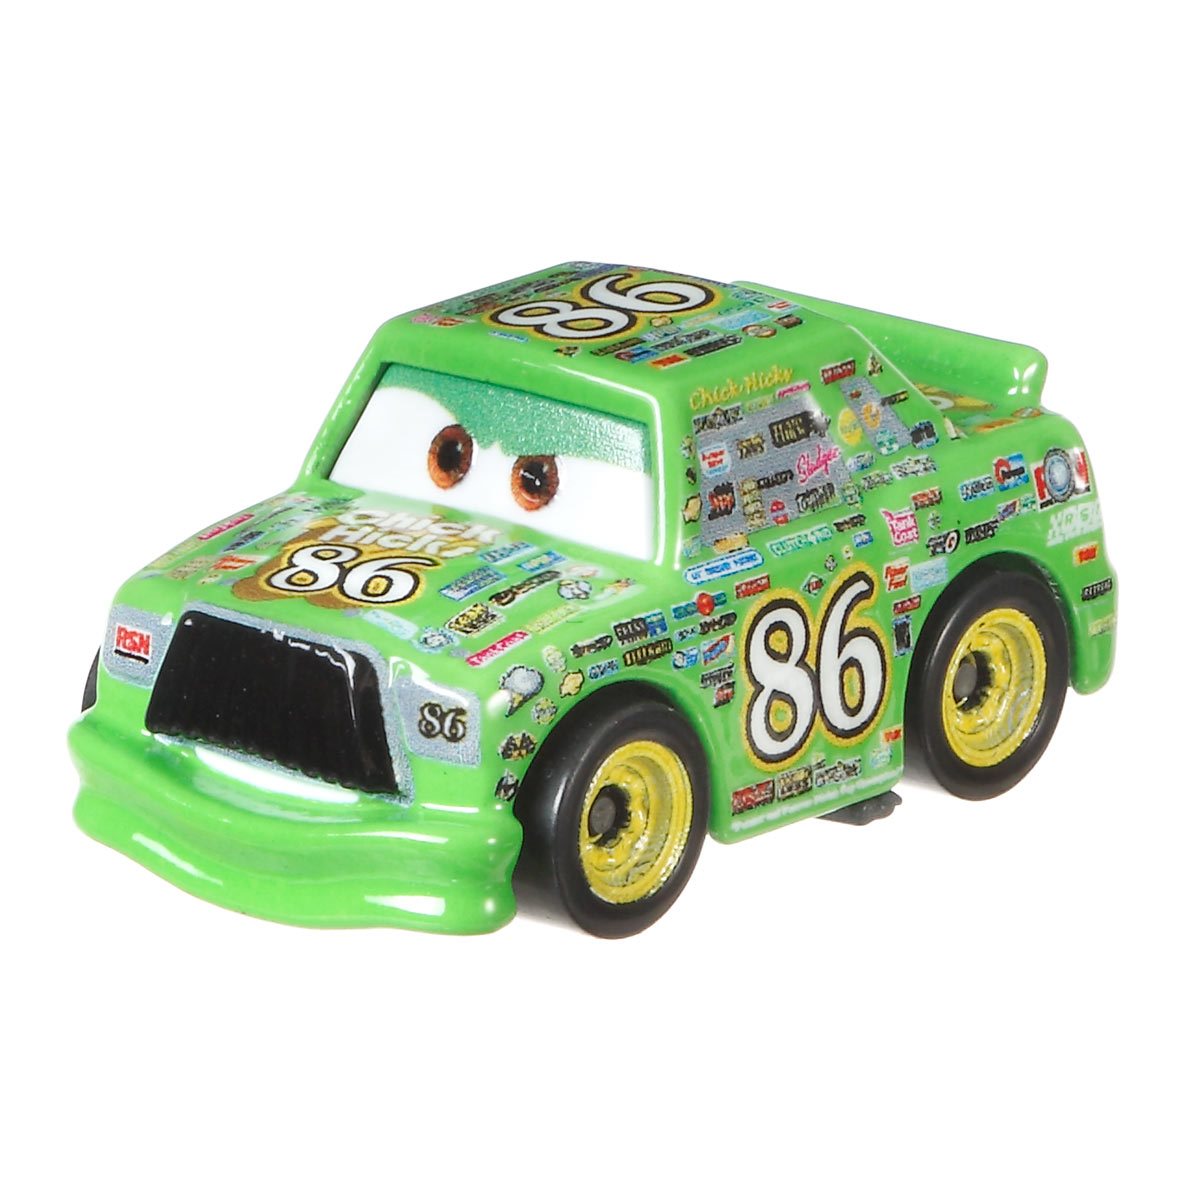 Мини тачки. Машинка Mattel cars мини гонщики. Машинка Mattel cars Базовая мини-гонщик в блистере gkf65-963d. Мини гонщик. Коллекция Тачки мини.